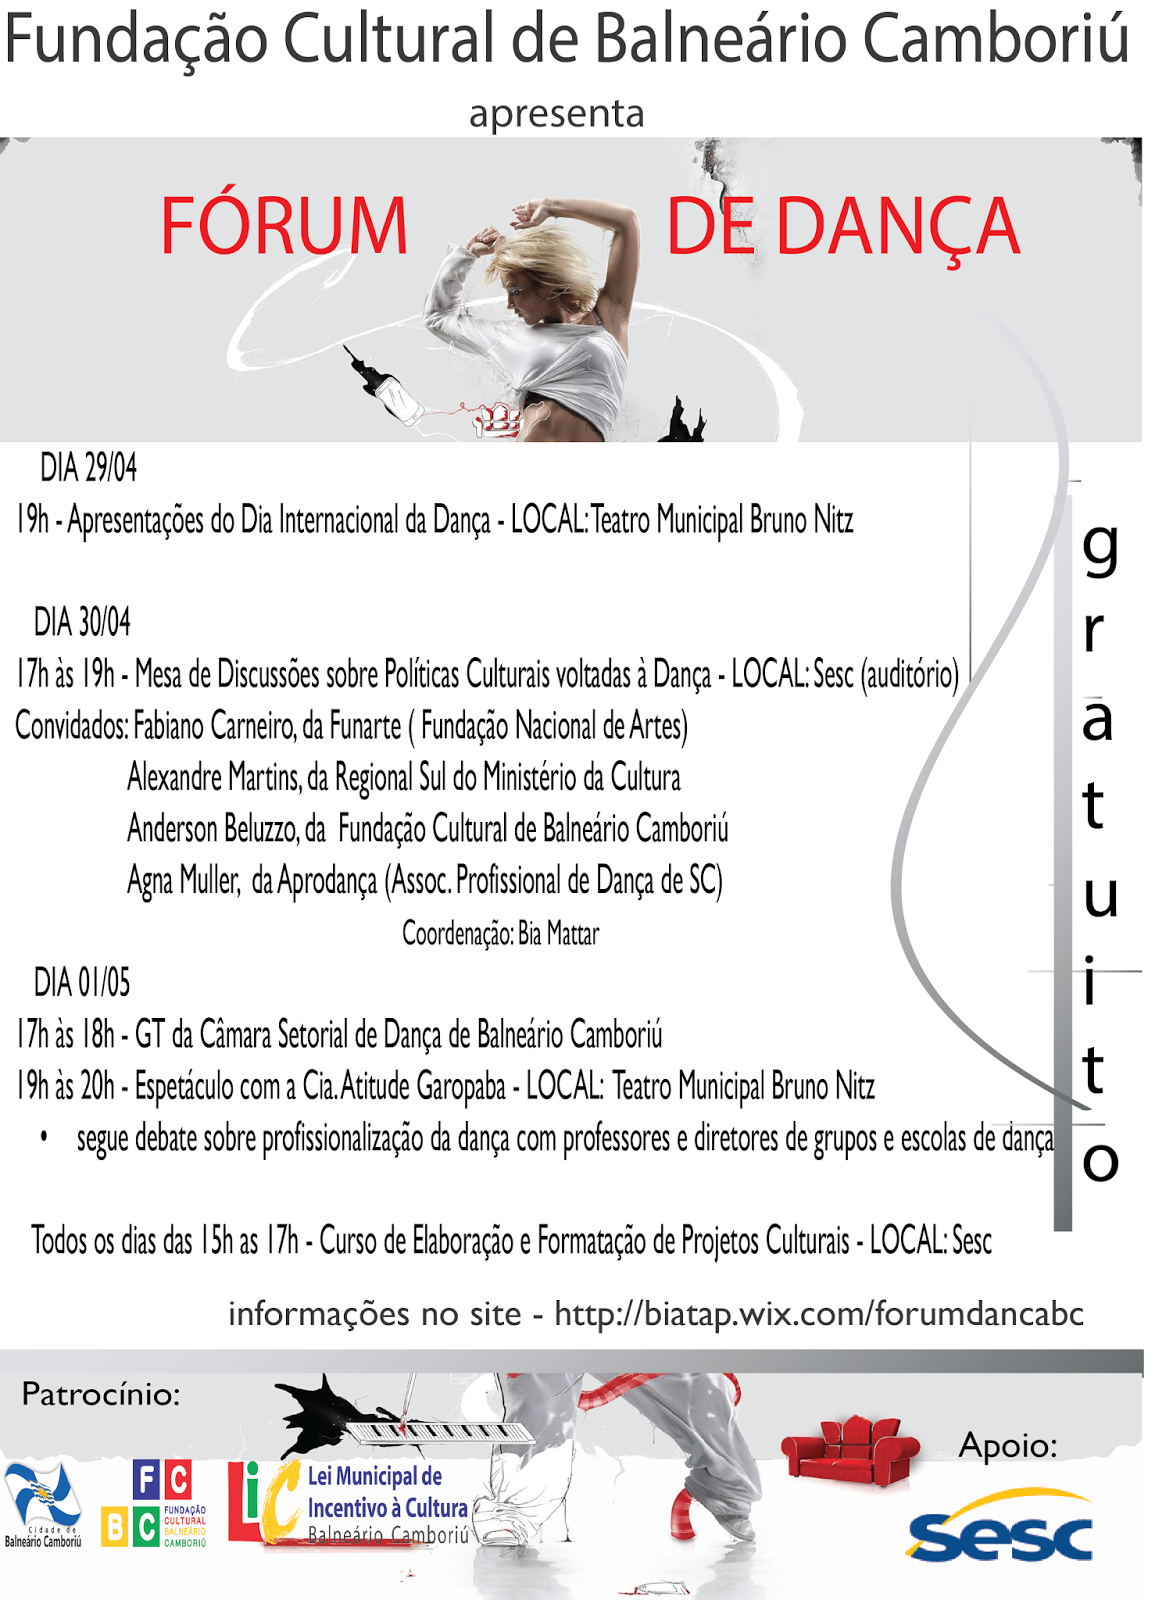  Forum de Dança de Balneário Camboriú